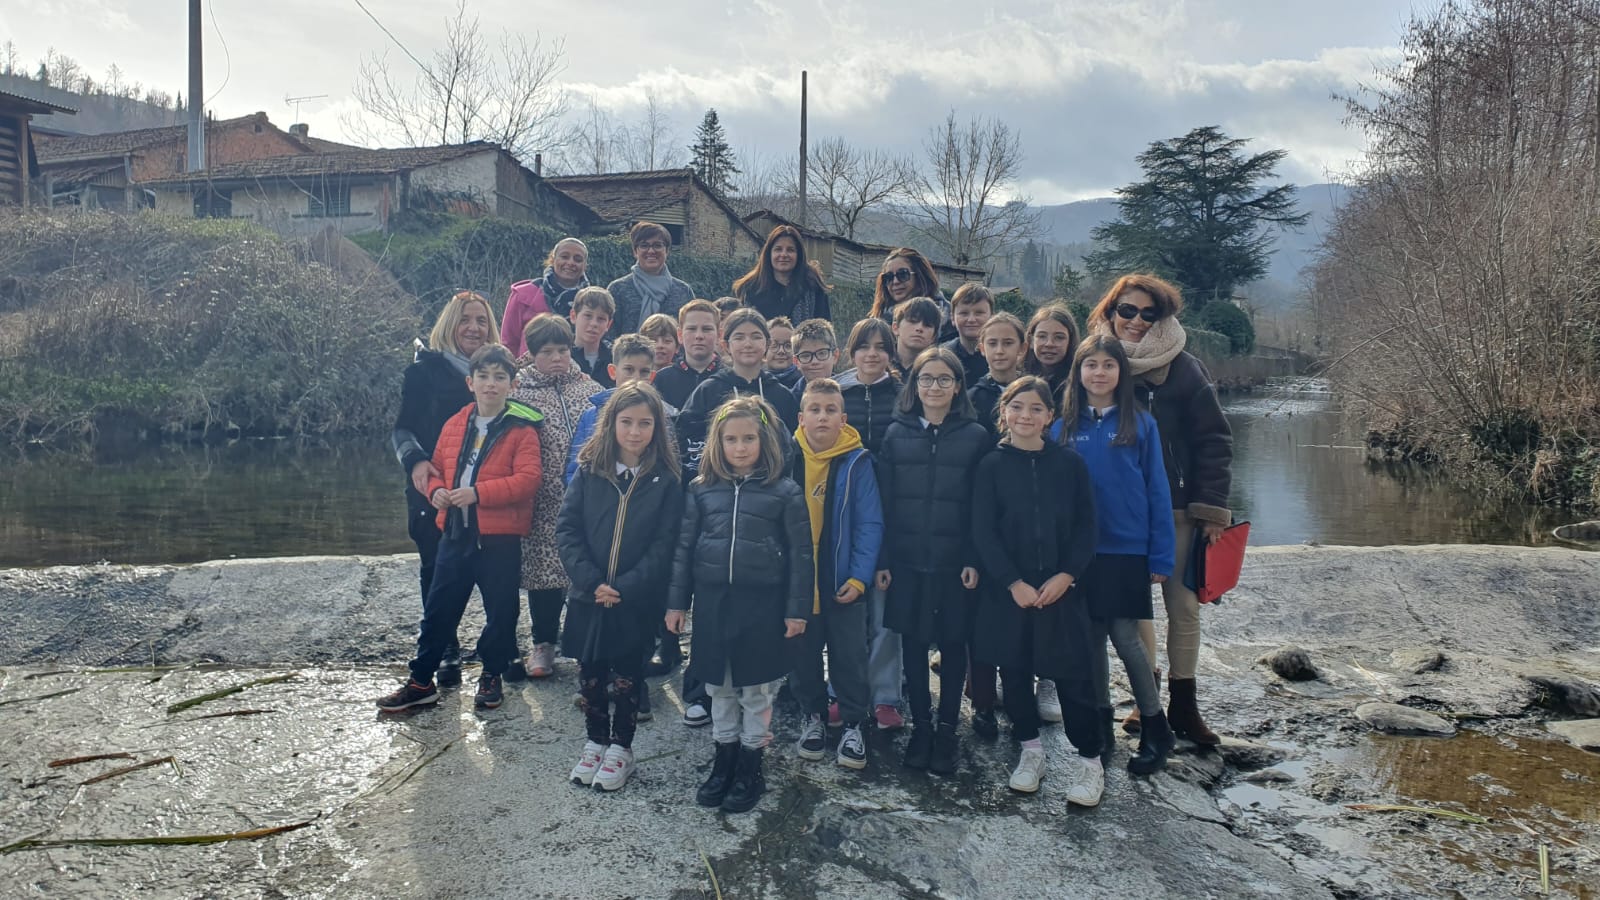 Gli alunni di San Piero in Frassino insieme al CB2 per festeggiare 10 anni di vita e di educazione ambientale